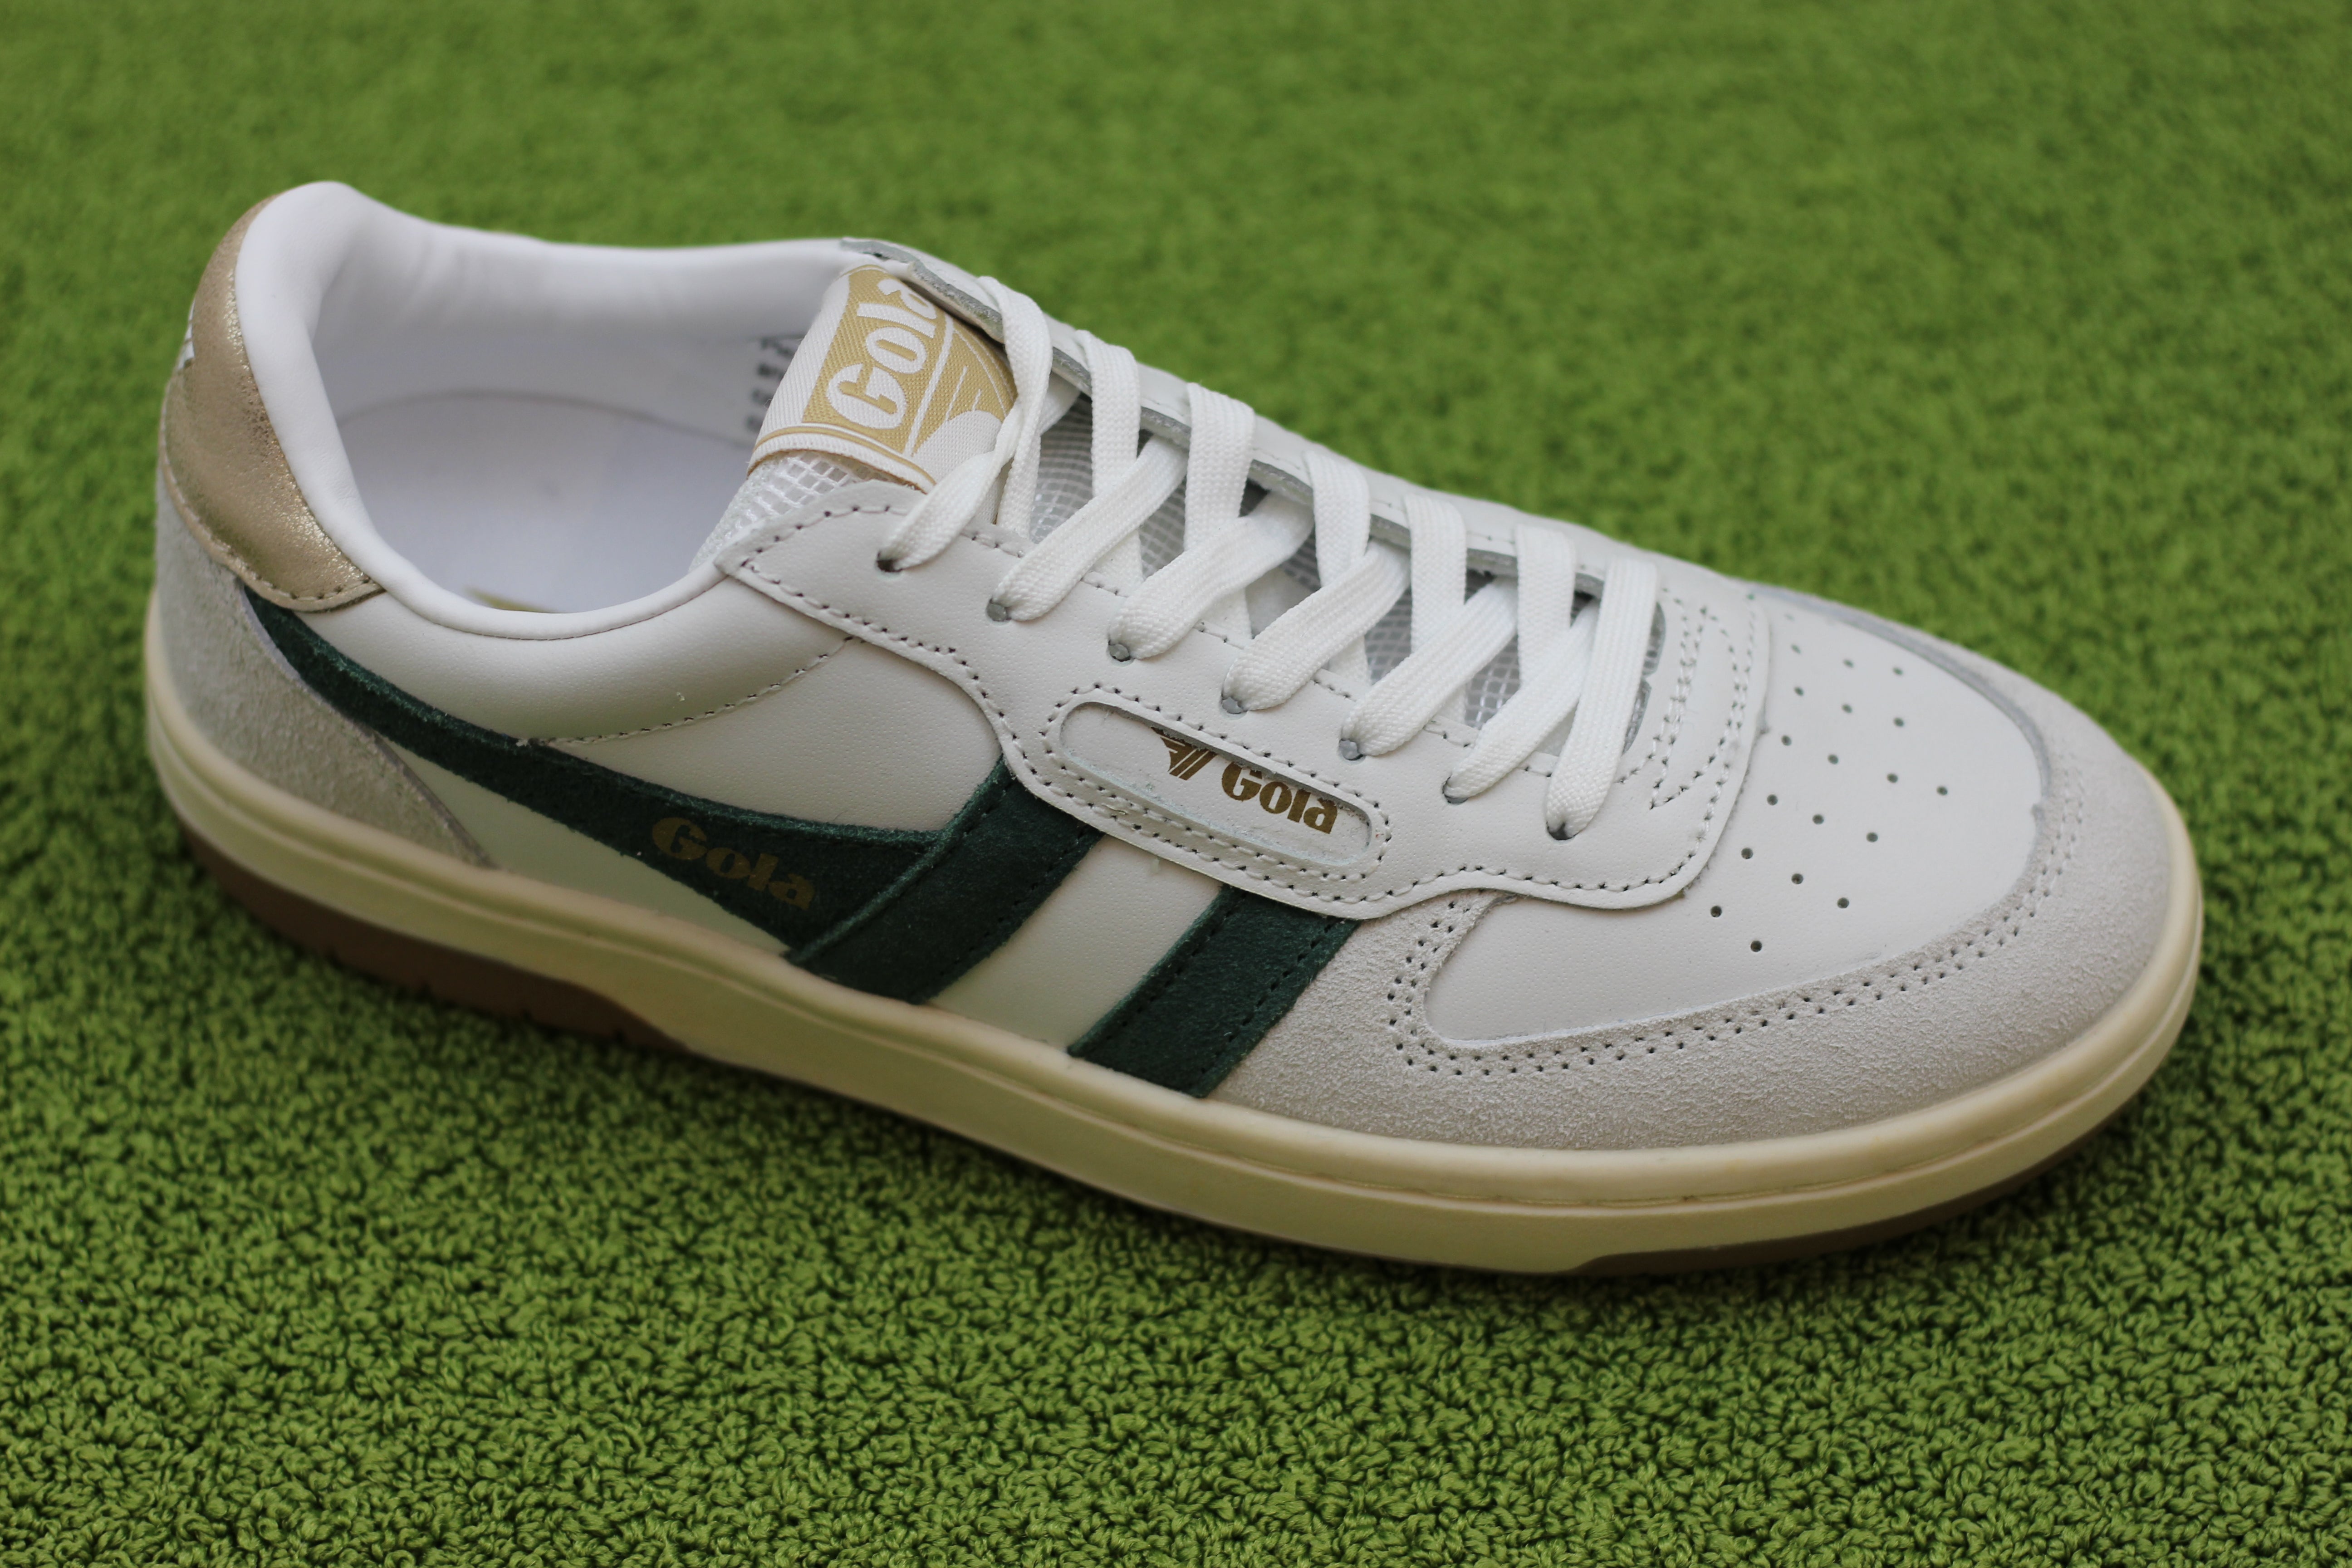 Buy Gola men's Hawk sneakers in white/green online from gola.co.uk